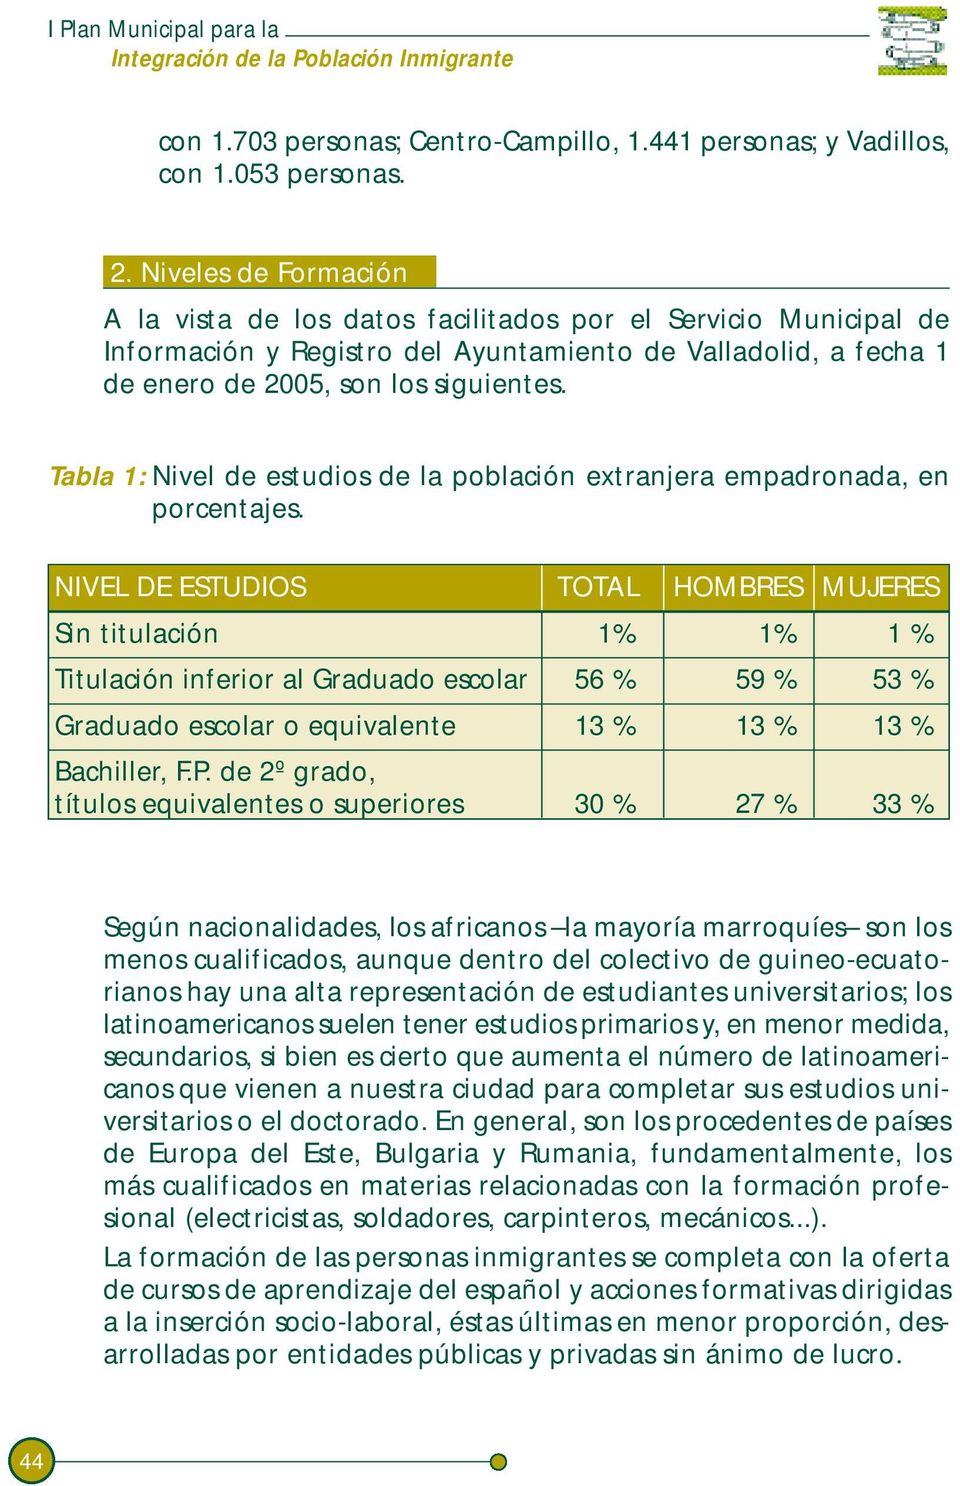 Tabla 1: Nivel de estudios de la población extranjera empadronada, en porcentajes.